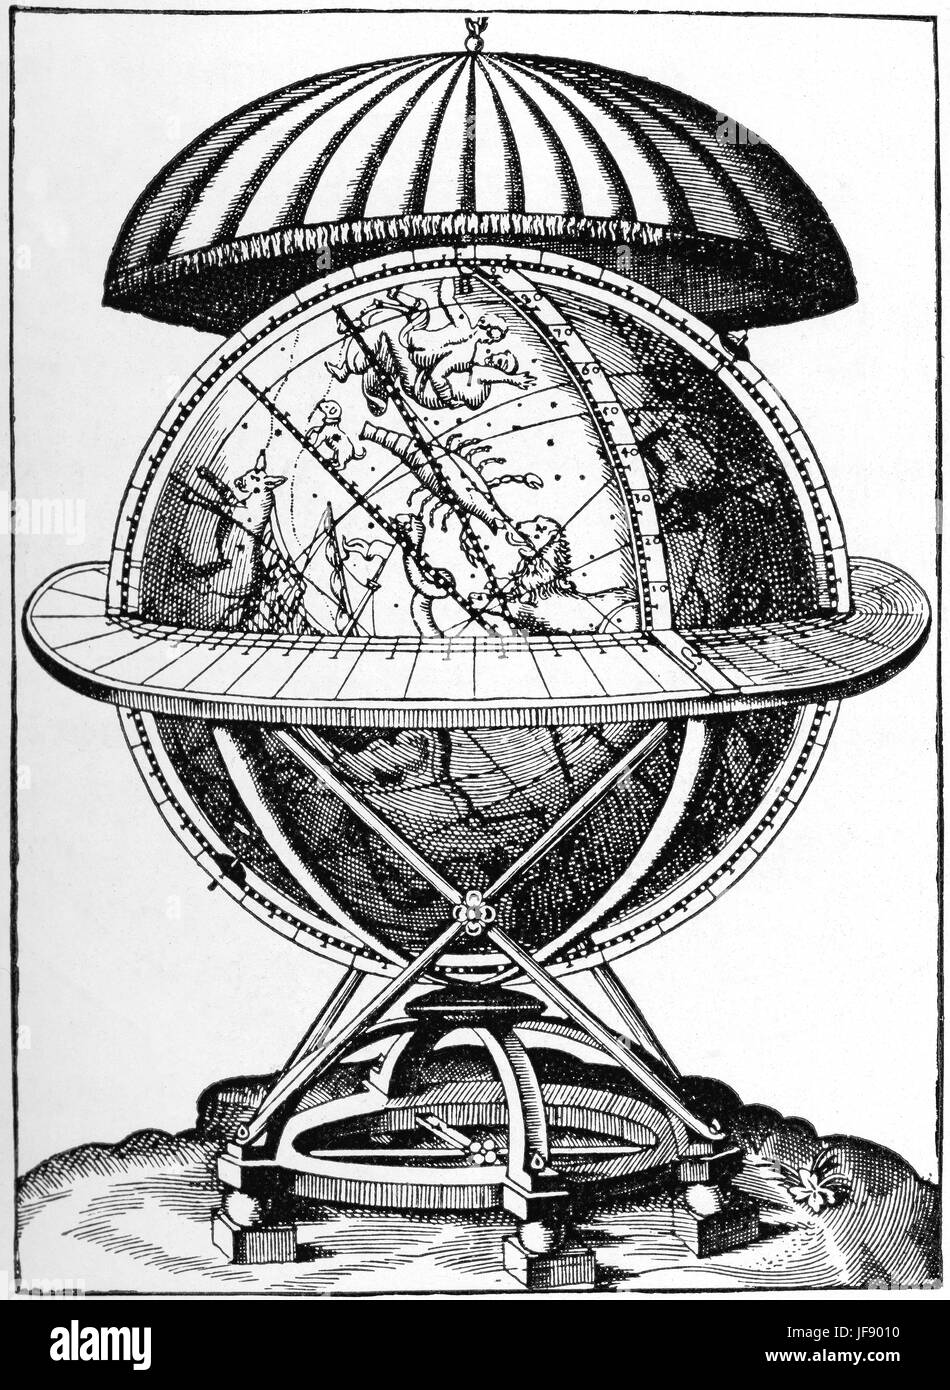 Thycho Brahé fait globe céleste dans années 1580. Environ 1,6 mètres de rayon,a pris plus de 10 ans à faire. La plupart des travaux rendant le globe en bois creux comme parfaitement sphérique que possible, après quoi il était couvert de plaques de laiton. Le monde avait deux principaux scientifiques : pour enregistrer la position de l'étoile observée par Tycho. En 1595 il avait observé avec précision 1000 stars inscrit sur le globe. Cependant, il a été initialement conçu comme un dispositif de calcul. Au moyen de cercles auxiliaires, l'azimuth local/ altitude coordonnées, mesurée avec les instruments de Tycho, ont été converties dans la Banque D'Images